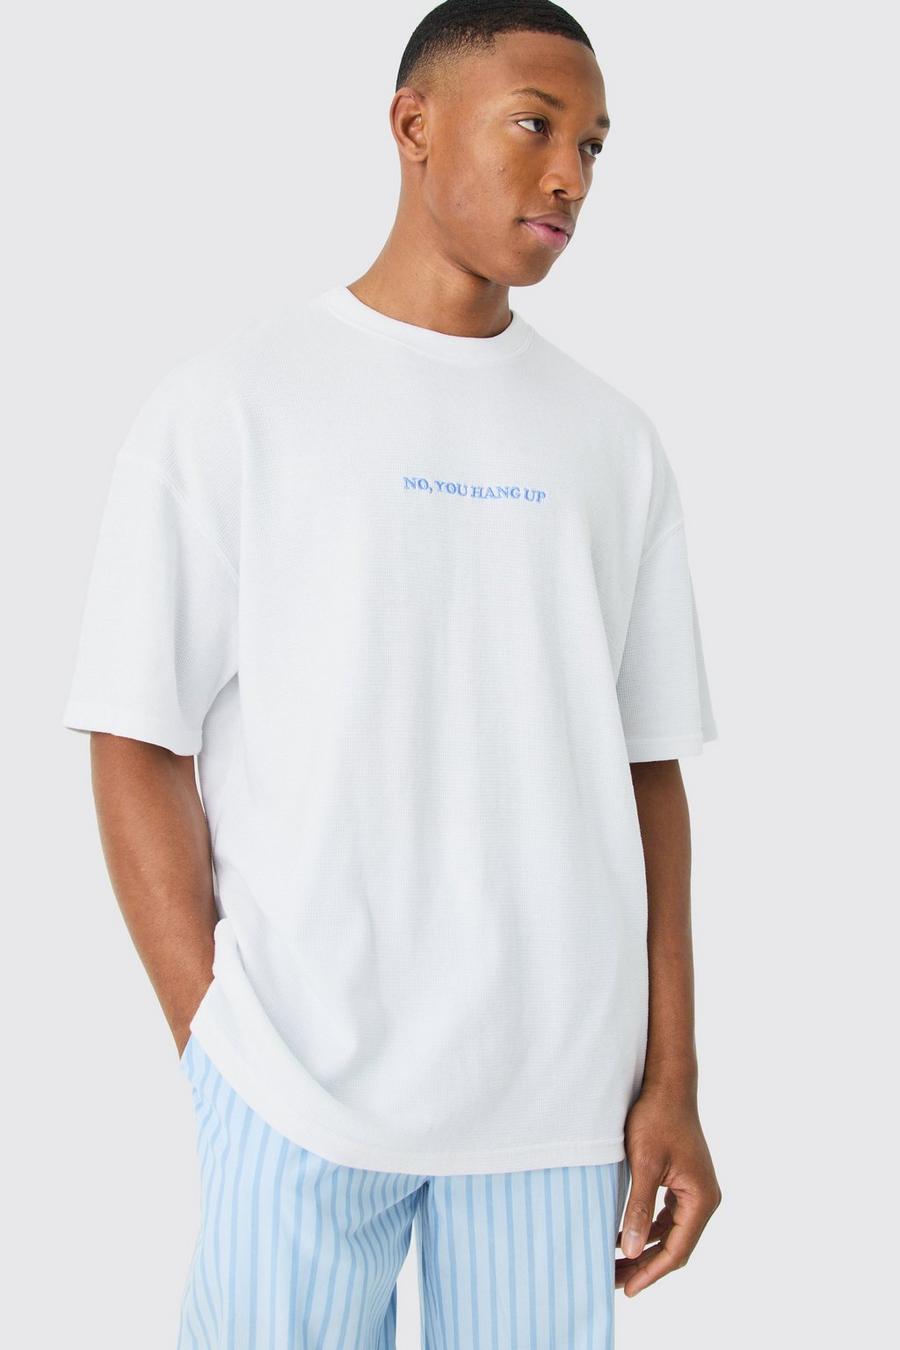 White Wafel Gebreid Lounge T-Shirt Met Tekst